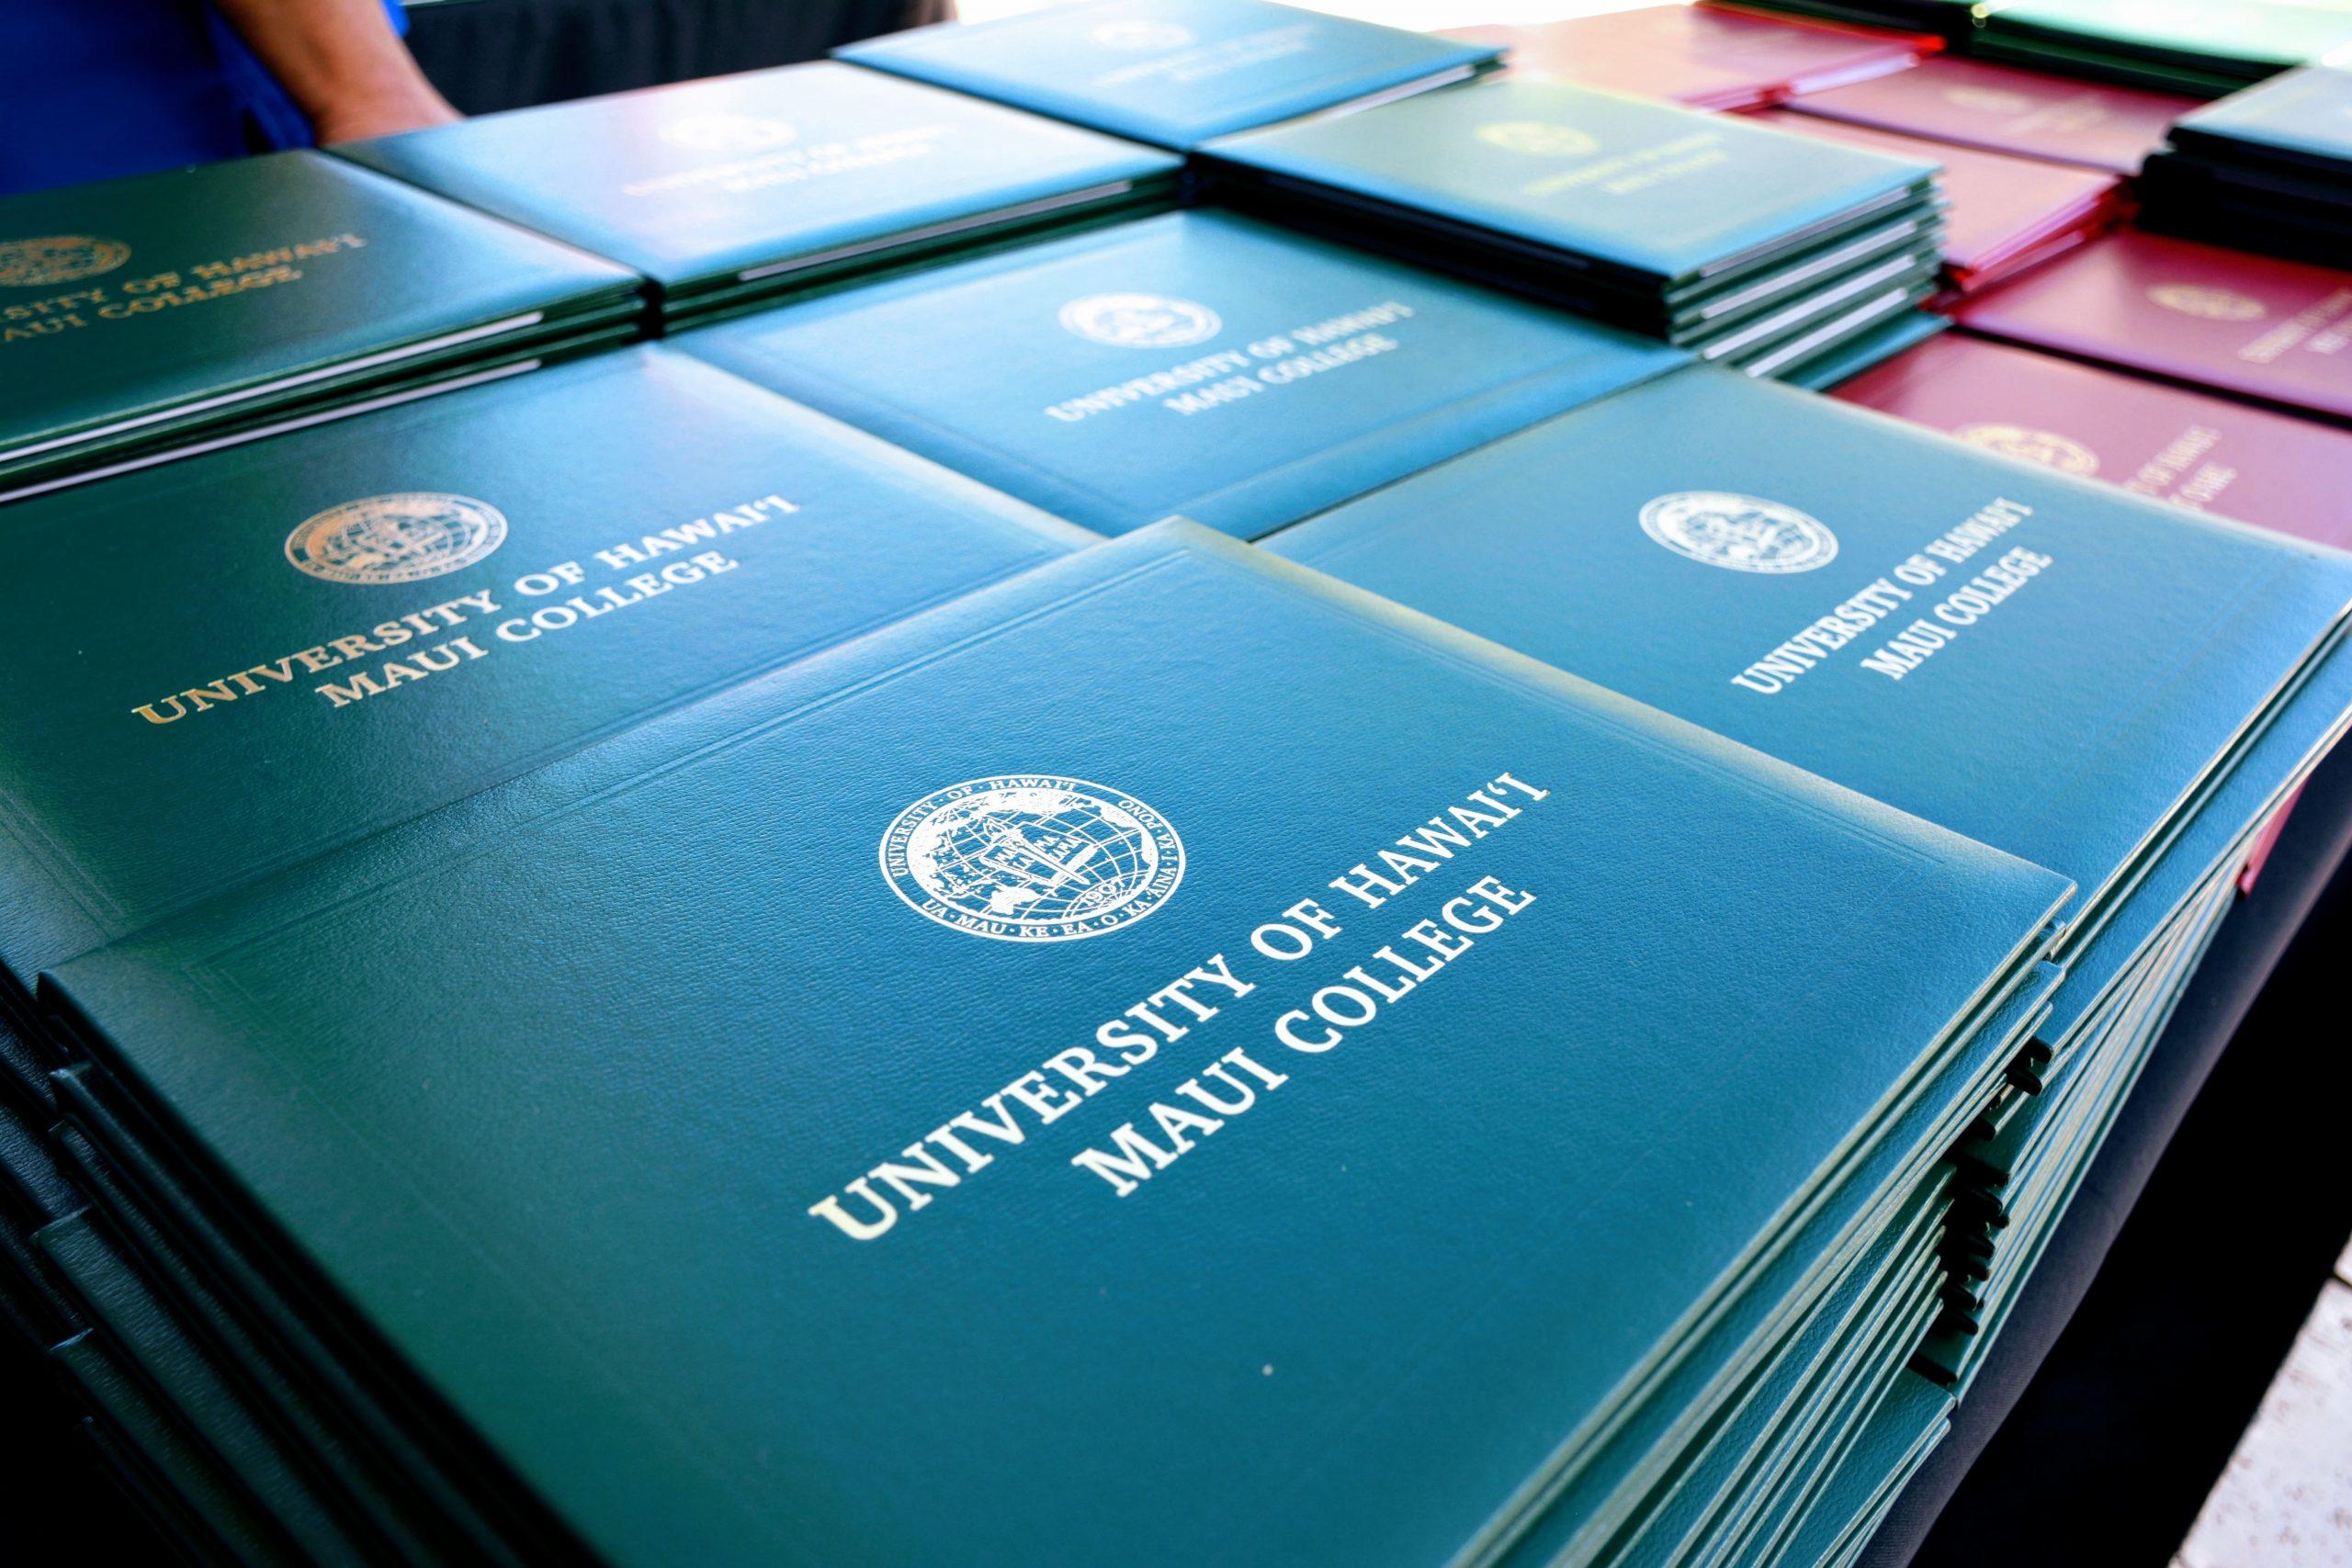 A stack of UHMC diplomas